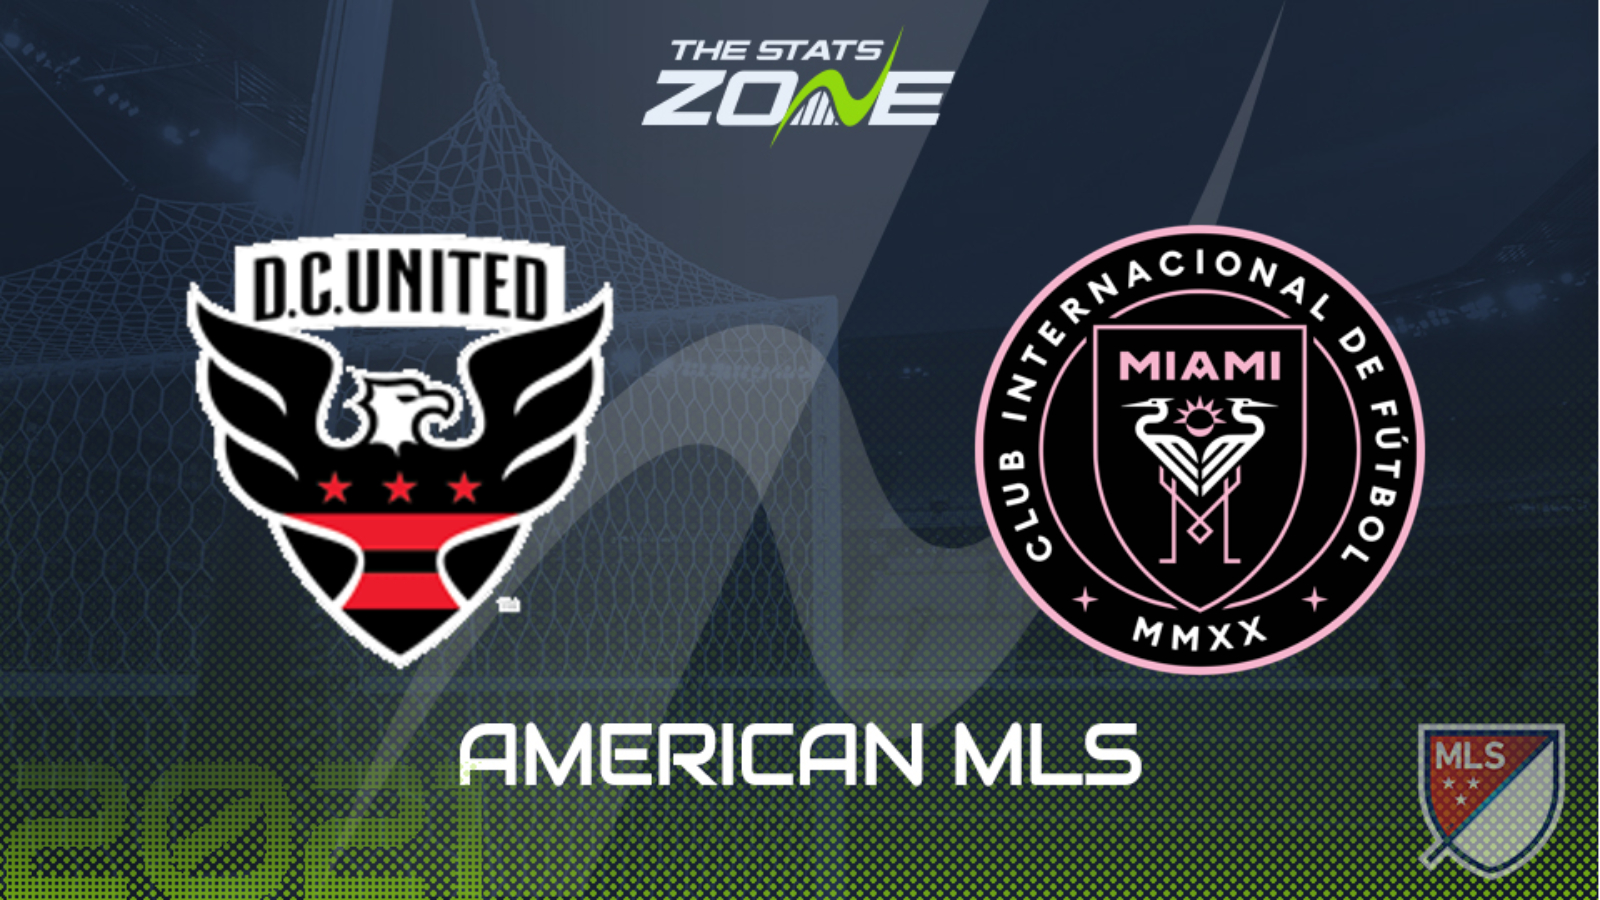 2021 American MLS DC United vs Inter Miami Preview & Prediction The